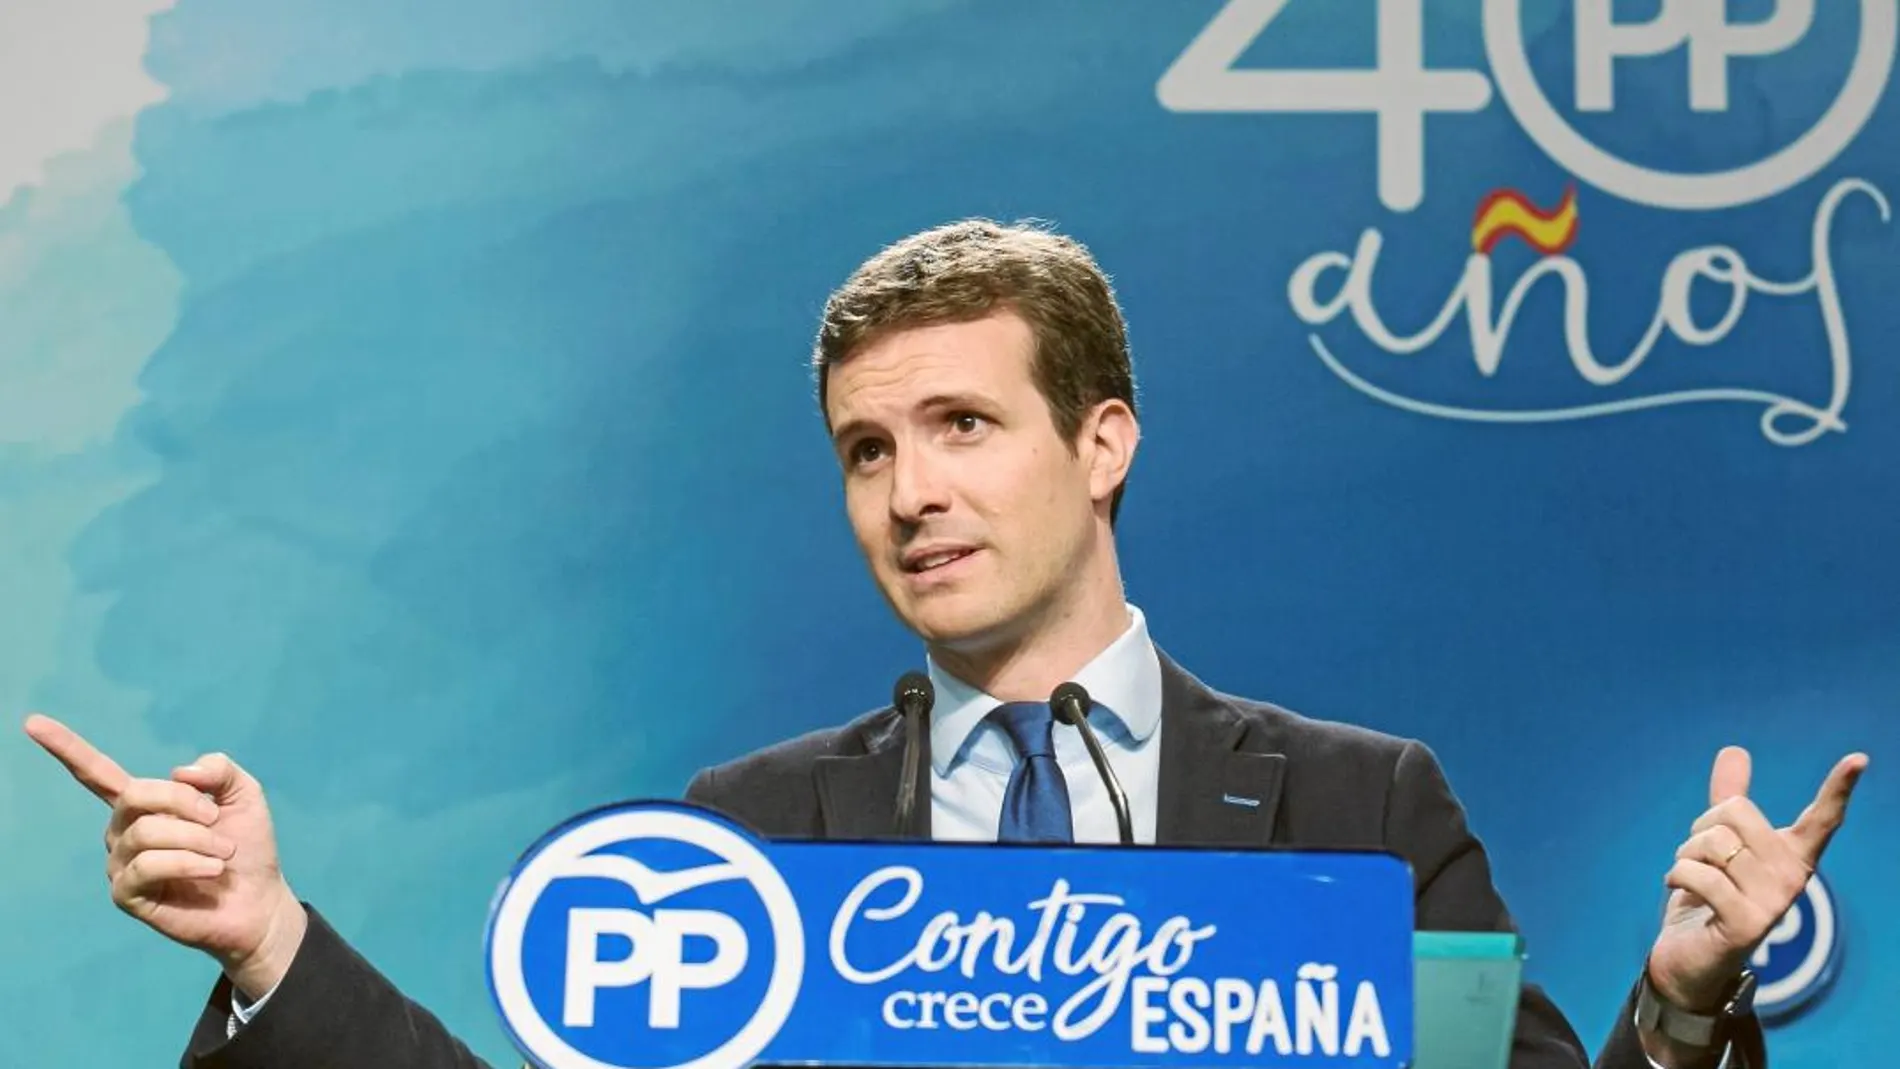 Casado acusó ayer al PSOE de poner a España en manos de los independentistas y «batasunos», convirtiendo a los españoles en rehenes de Puigdemont y de Otegi